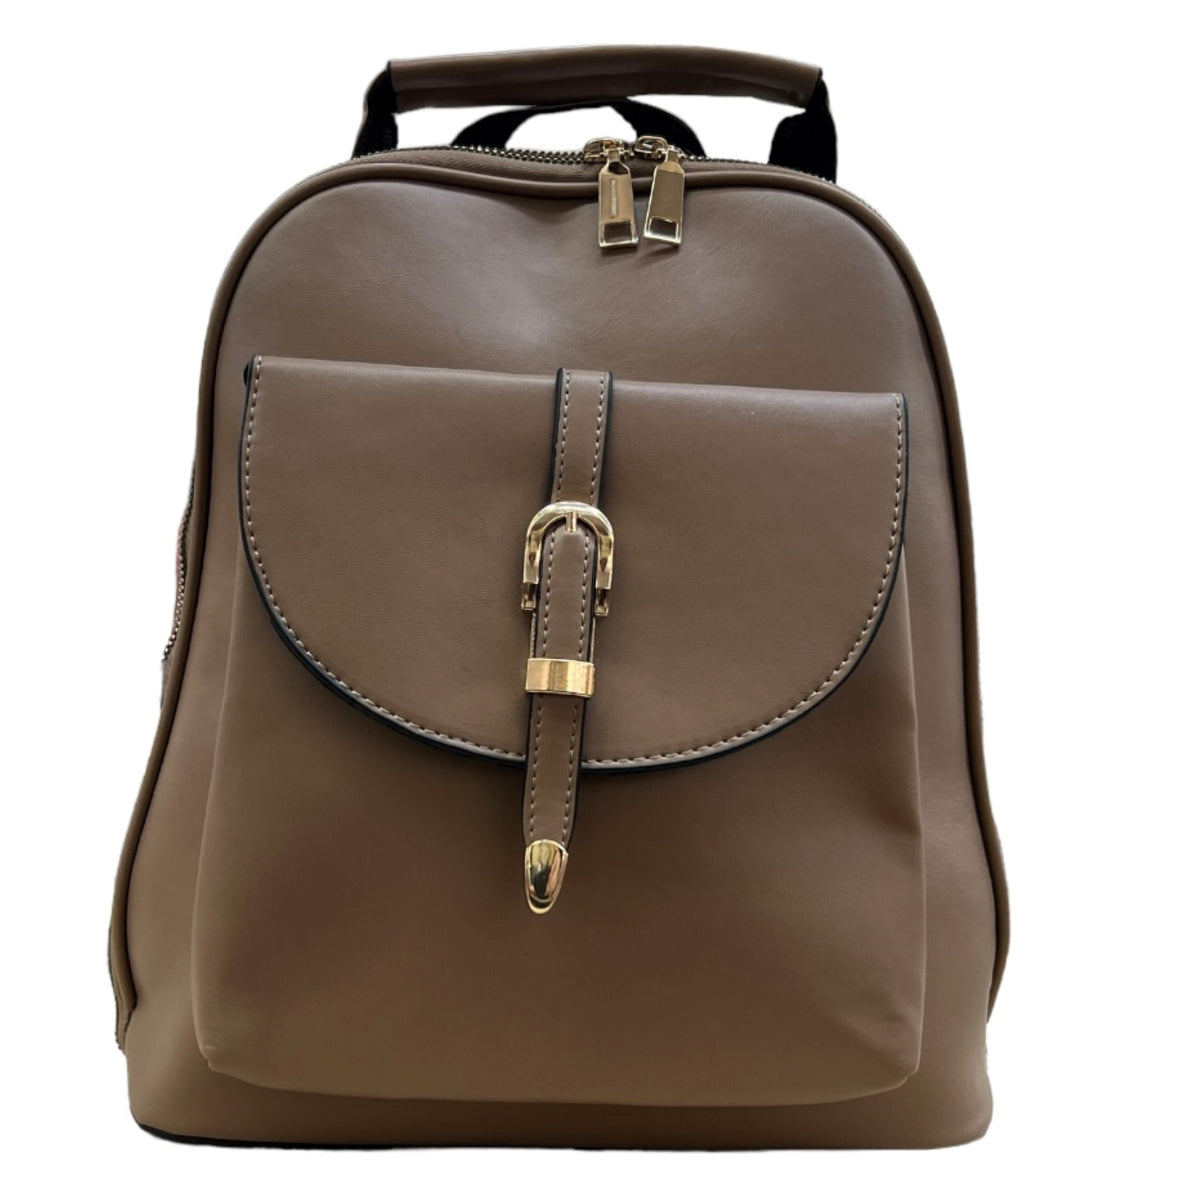 Le sac à dos femme est parfait pour un style urbain et actif. Ce sac à dos est doté d'un compartiment principal et secondaire pour garder vos affaires bien rangées. Il peut être porté à l'épaule ou à dos et offre une excellente maniabilité. 